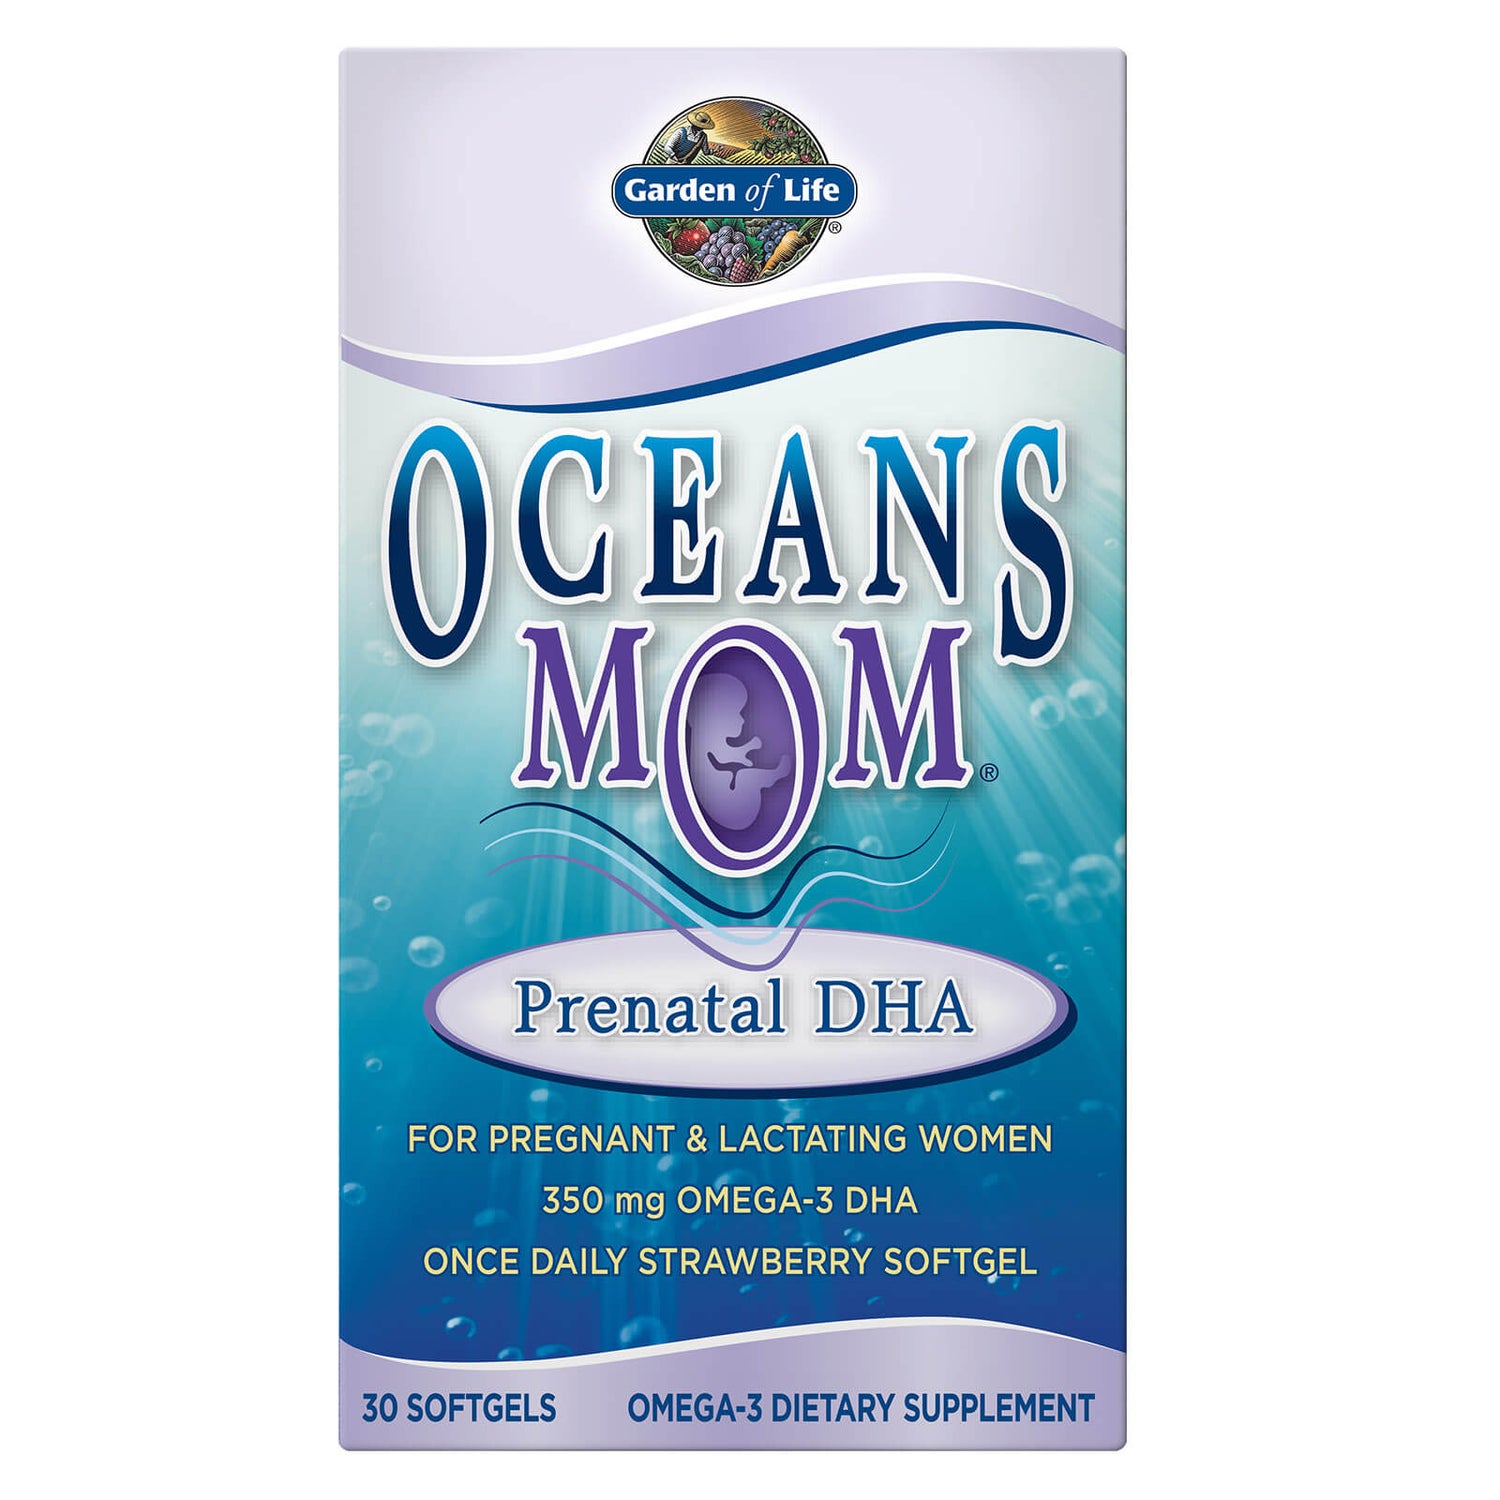 Cápsulas blandas prenatales con DHA y omega-3 Oceans MOM 350 mg - 30 cápsulas blandas